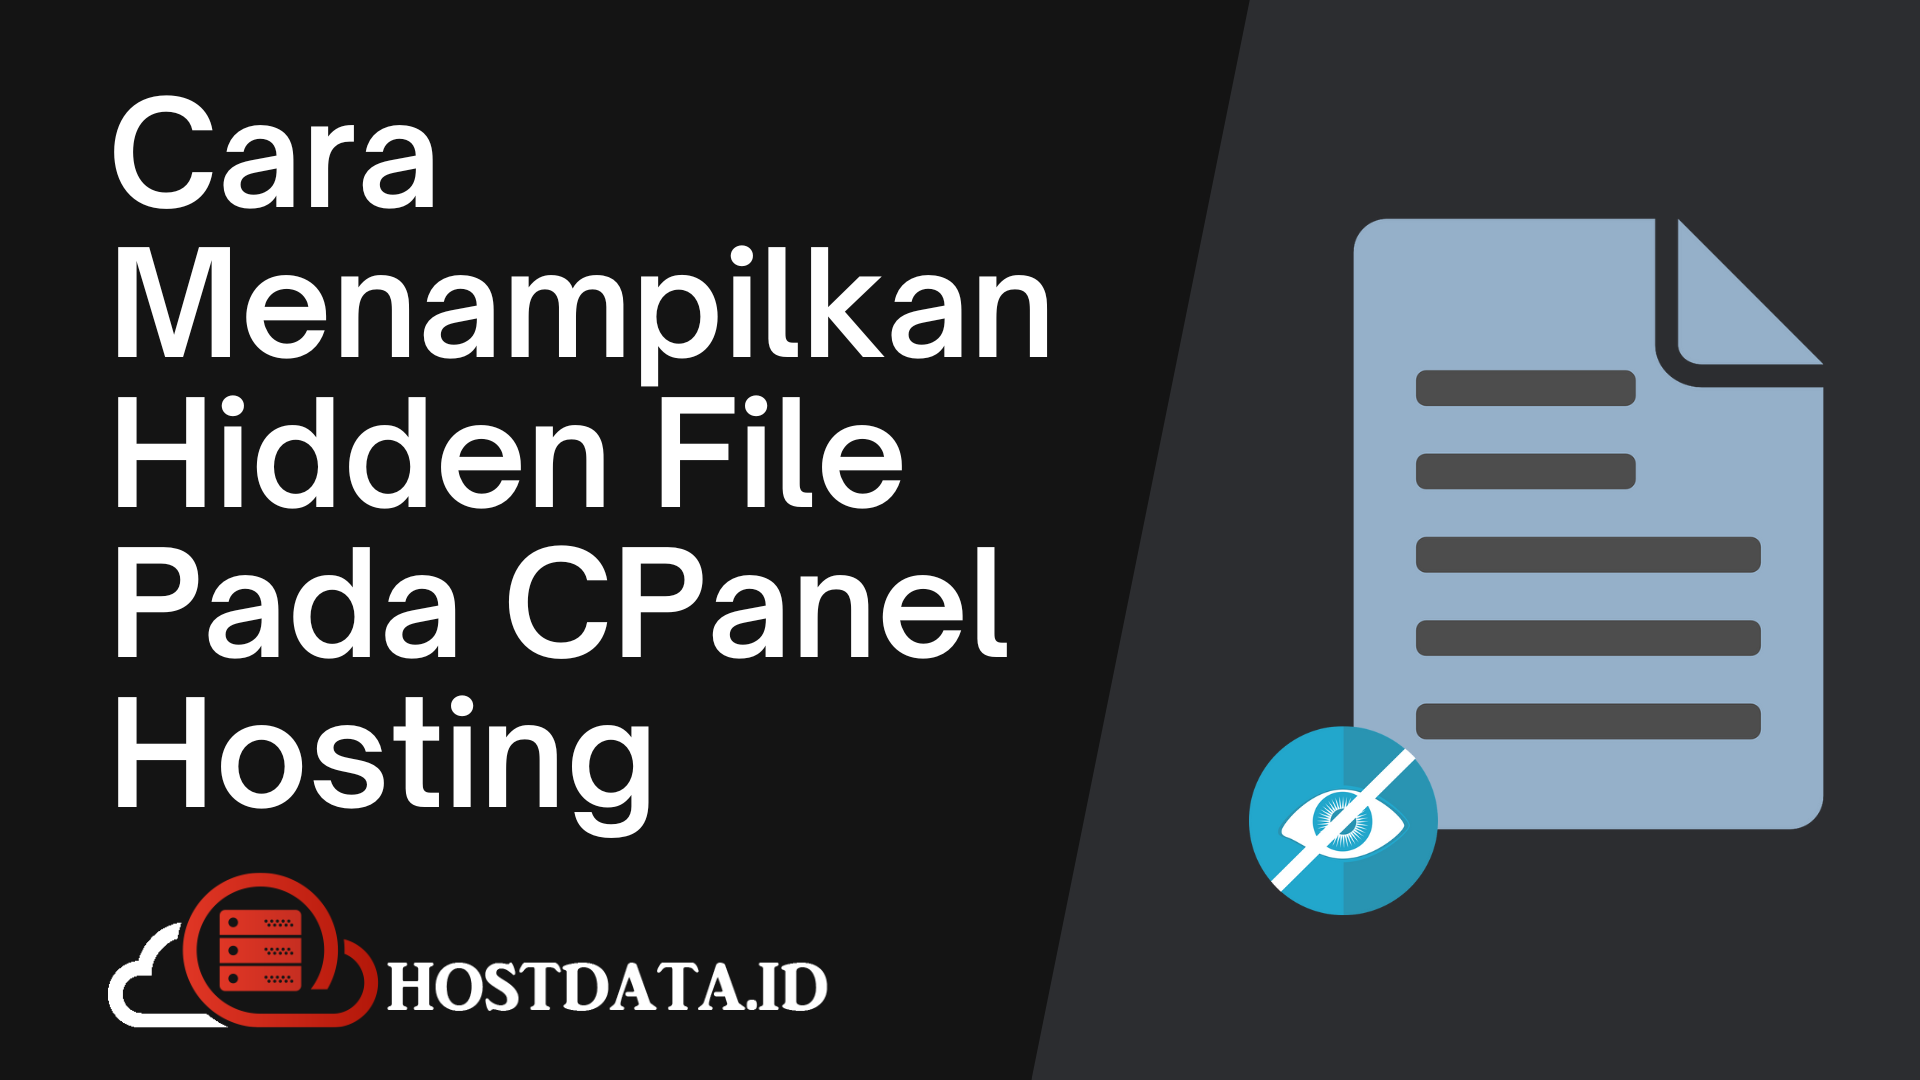 Cara Menampilkan Hidden File Pada CPanel Hosting